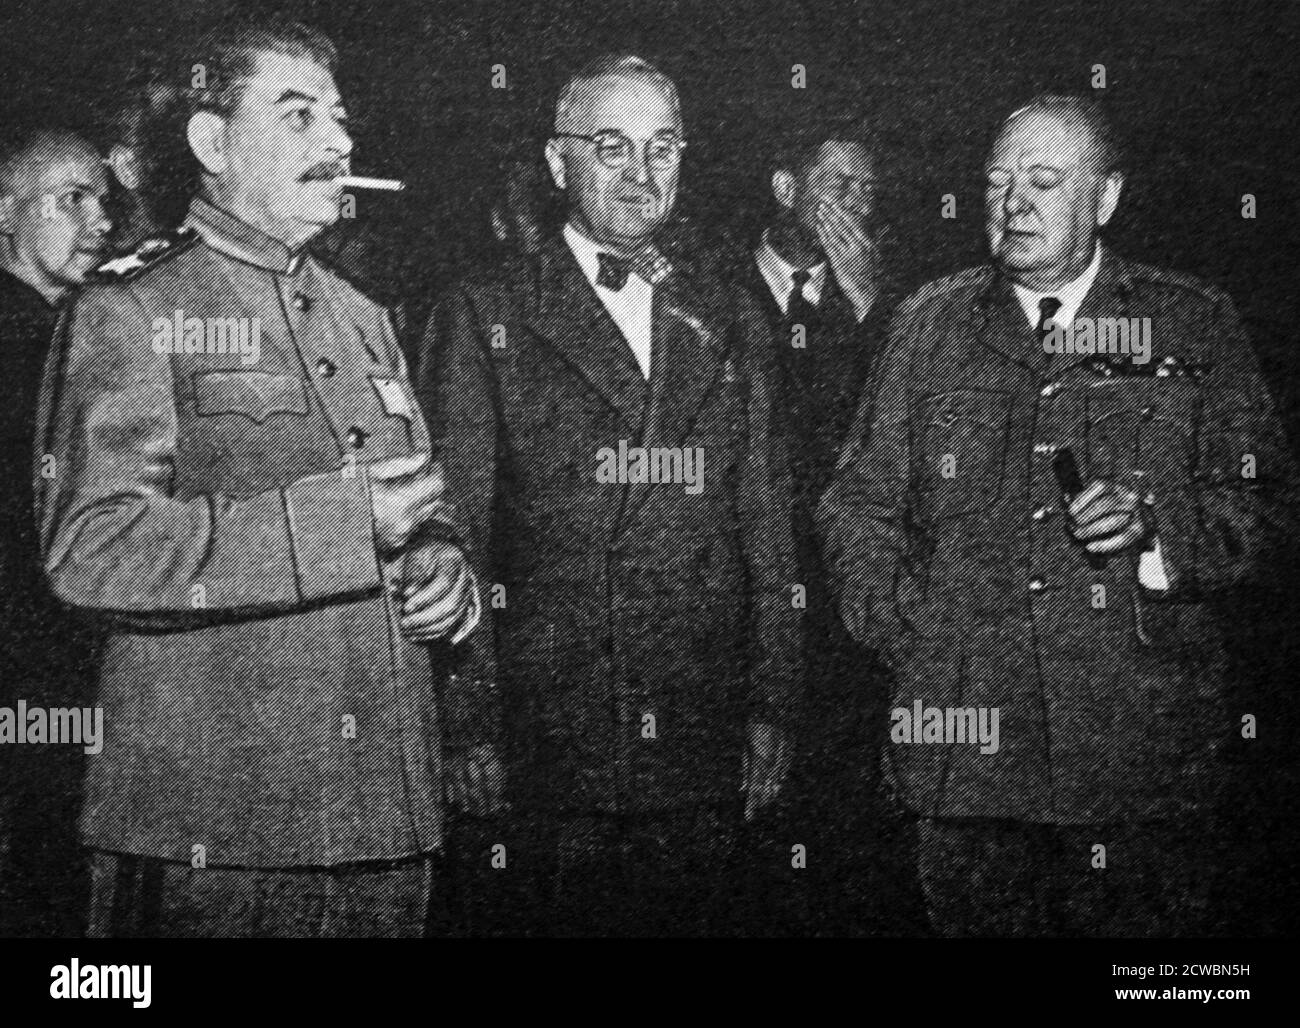 Schwarz-Weiß-Fotografie des Zweiten Weltkriegs (1939-1945) zeigt den sowjetischen Führer Josef Stalin (1878-1953), US-Präsident Harry S. Truman (1884-1972) und den britischen Premierminister Sir Winston Churchill (1874-1965) auf der Potsdamer Konferenz im Juli 1945. Stockfoto